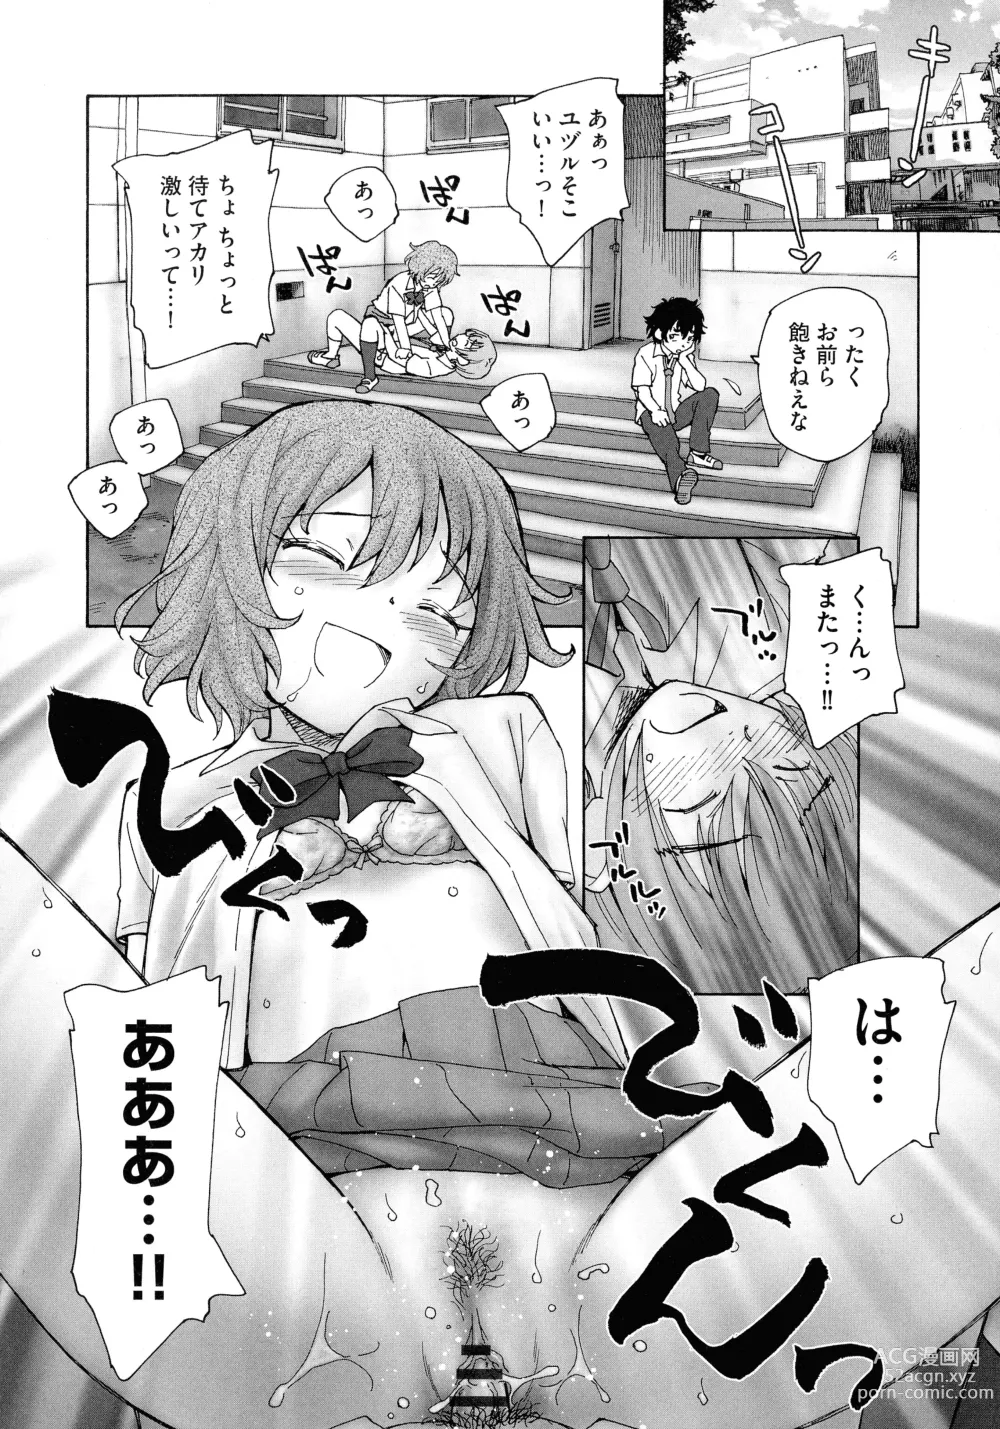 Page 188 of manga Mayoi no Machi no Akazukin Jo